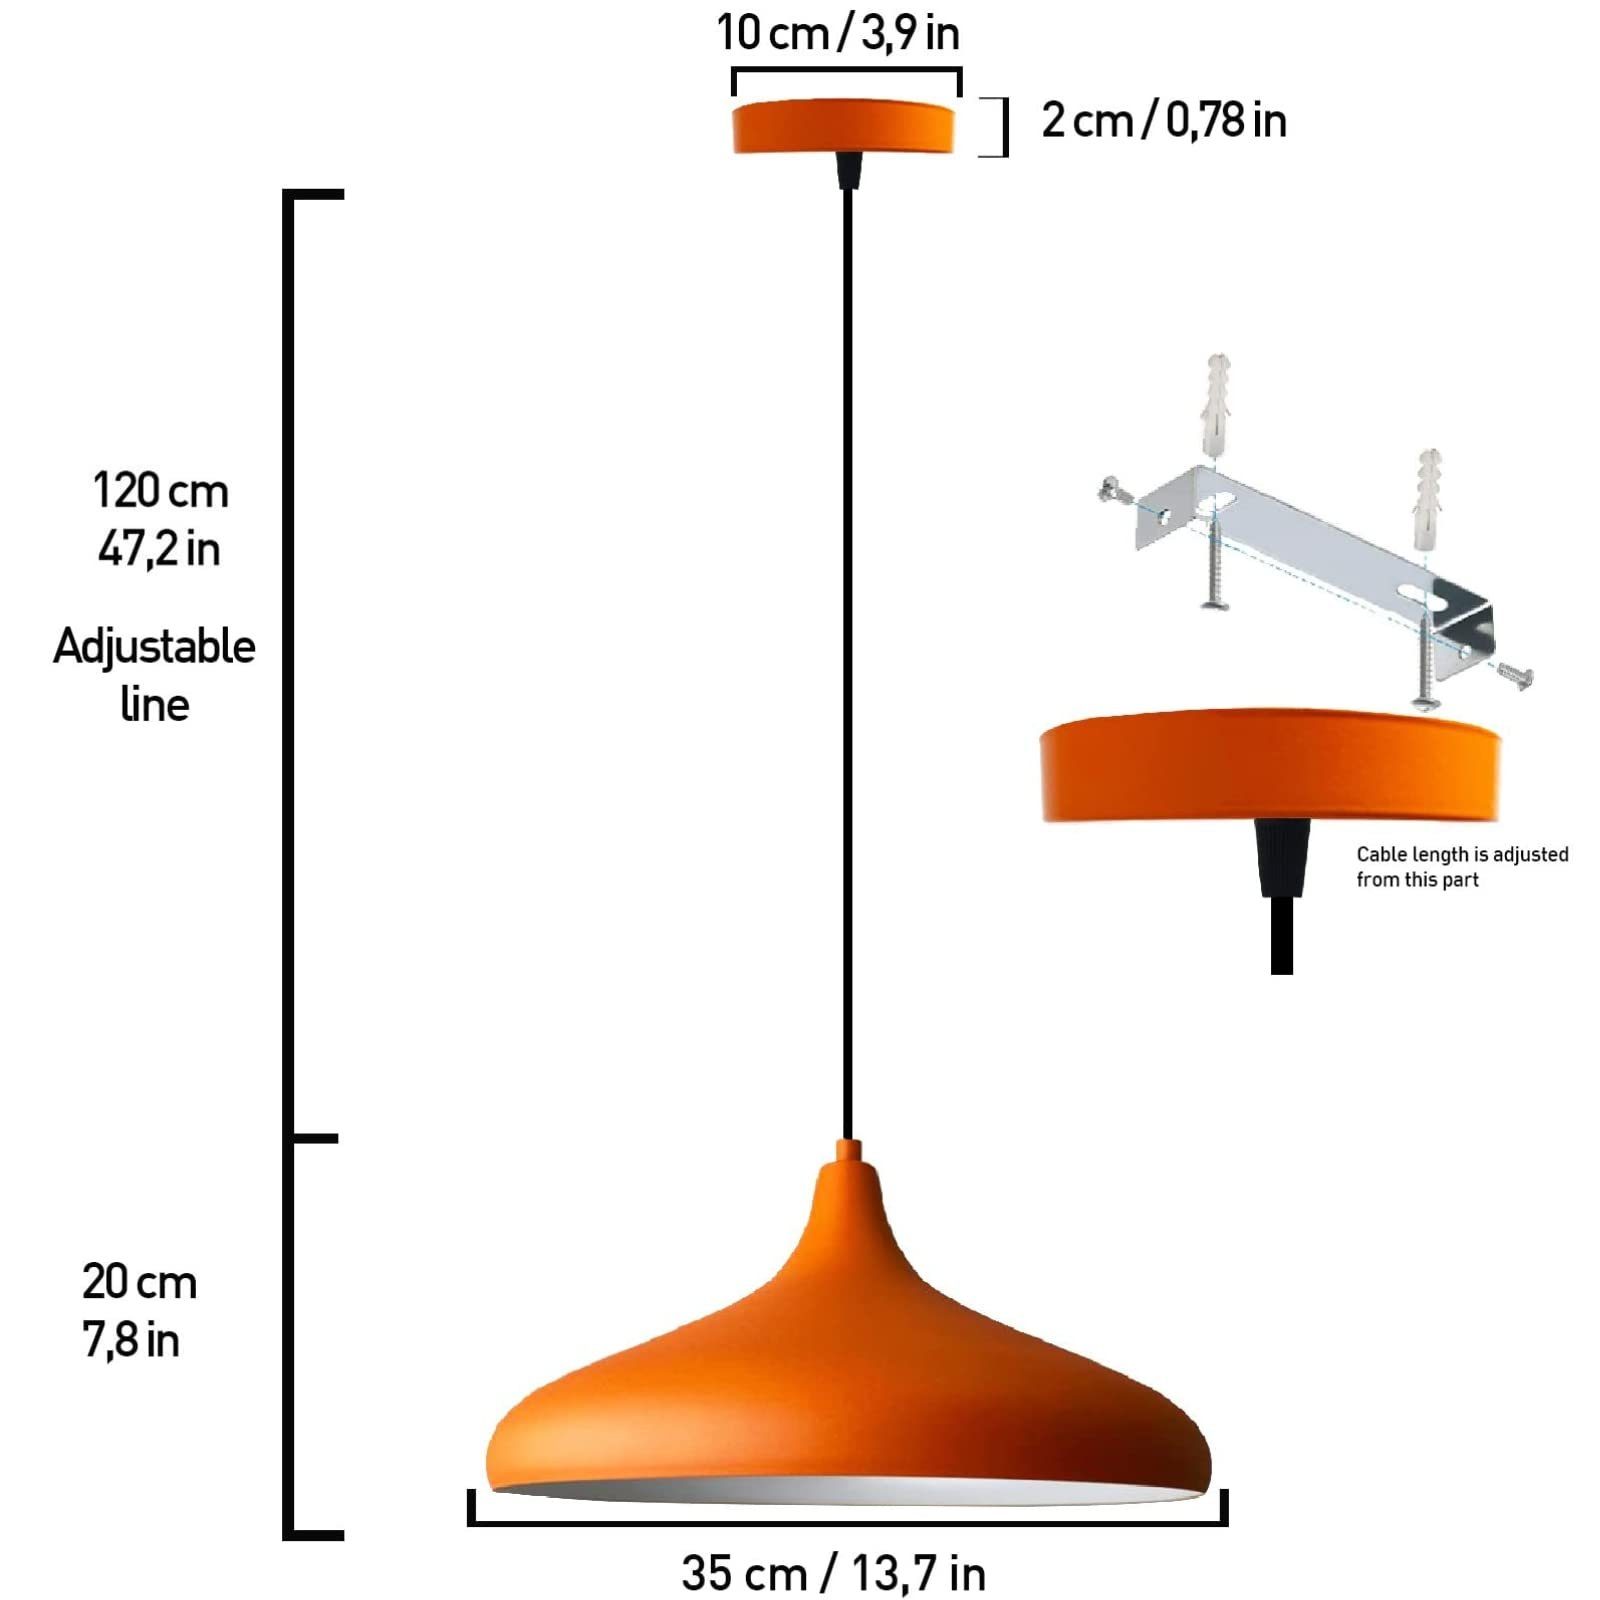 Bamyum 35 Lampe, cm Leuchtmittel E27 Metall Orange Durchmesser Pendelleuchte Moderne Bamyum Pendelleuchte ohne